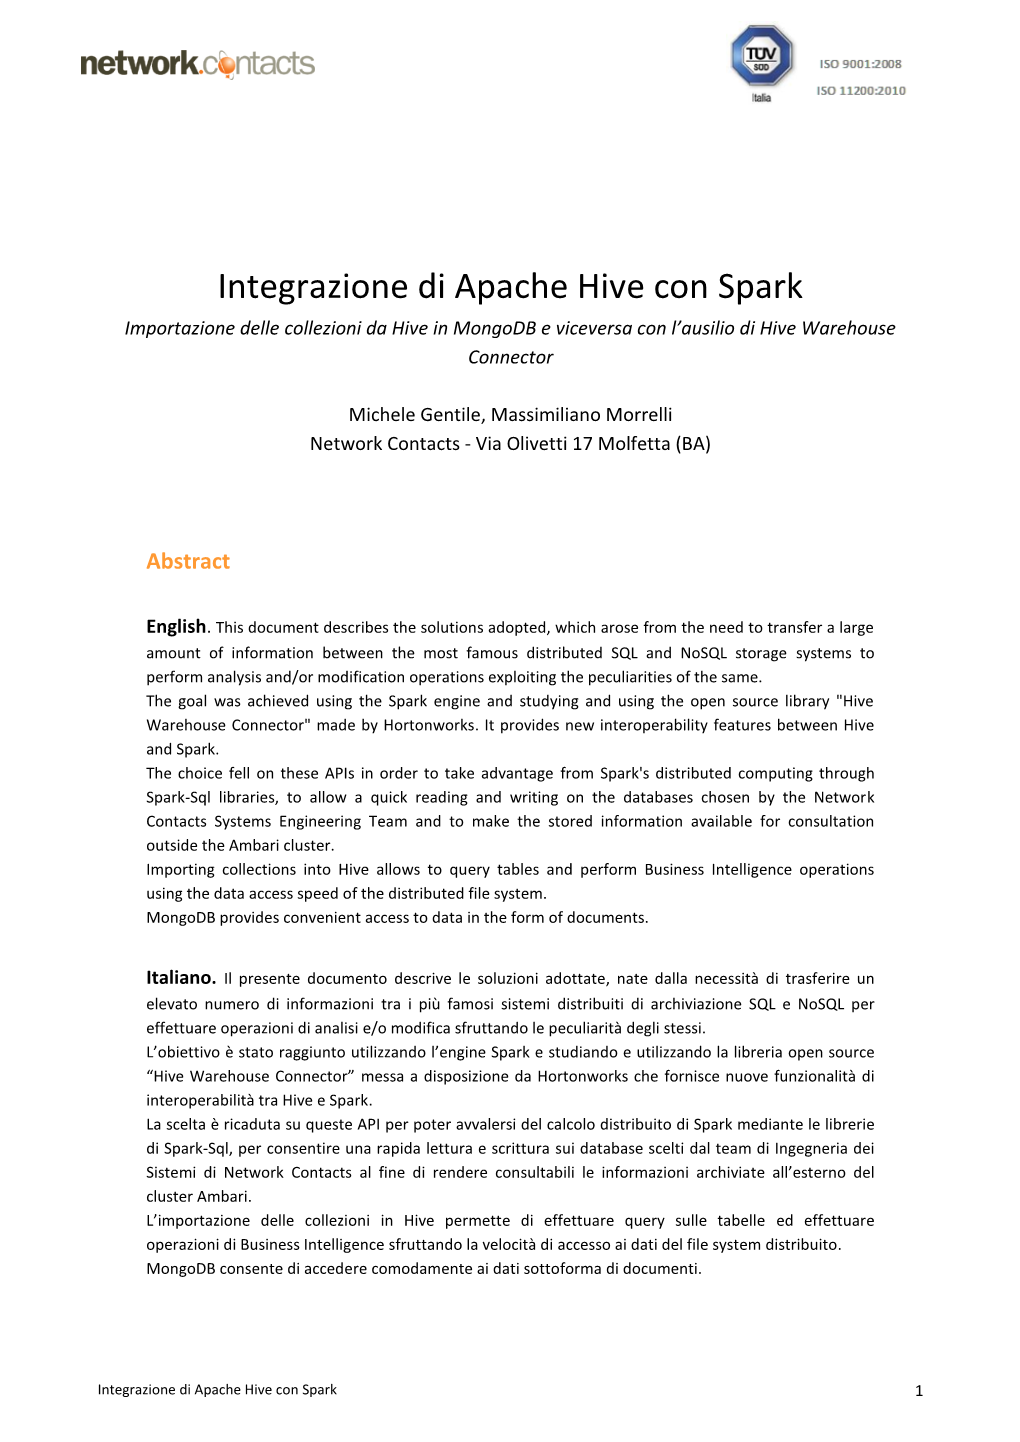 Integrazione Di Apache Hive Con Spark Importazione Delle Collezioni Da Hive in Mongodb E Viceversa Con L’Ausilio Di Hive Warehouse Connector